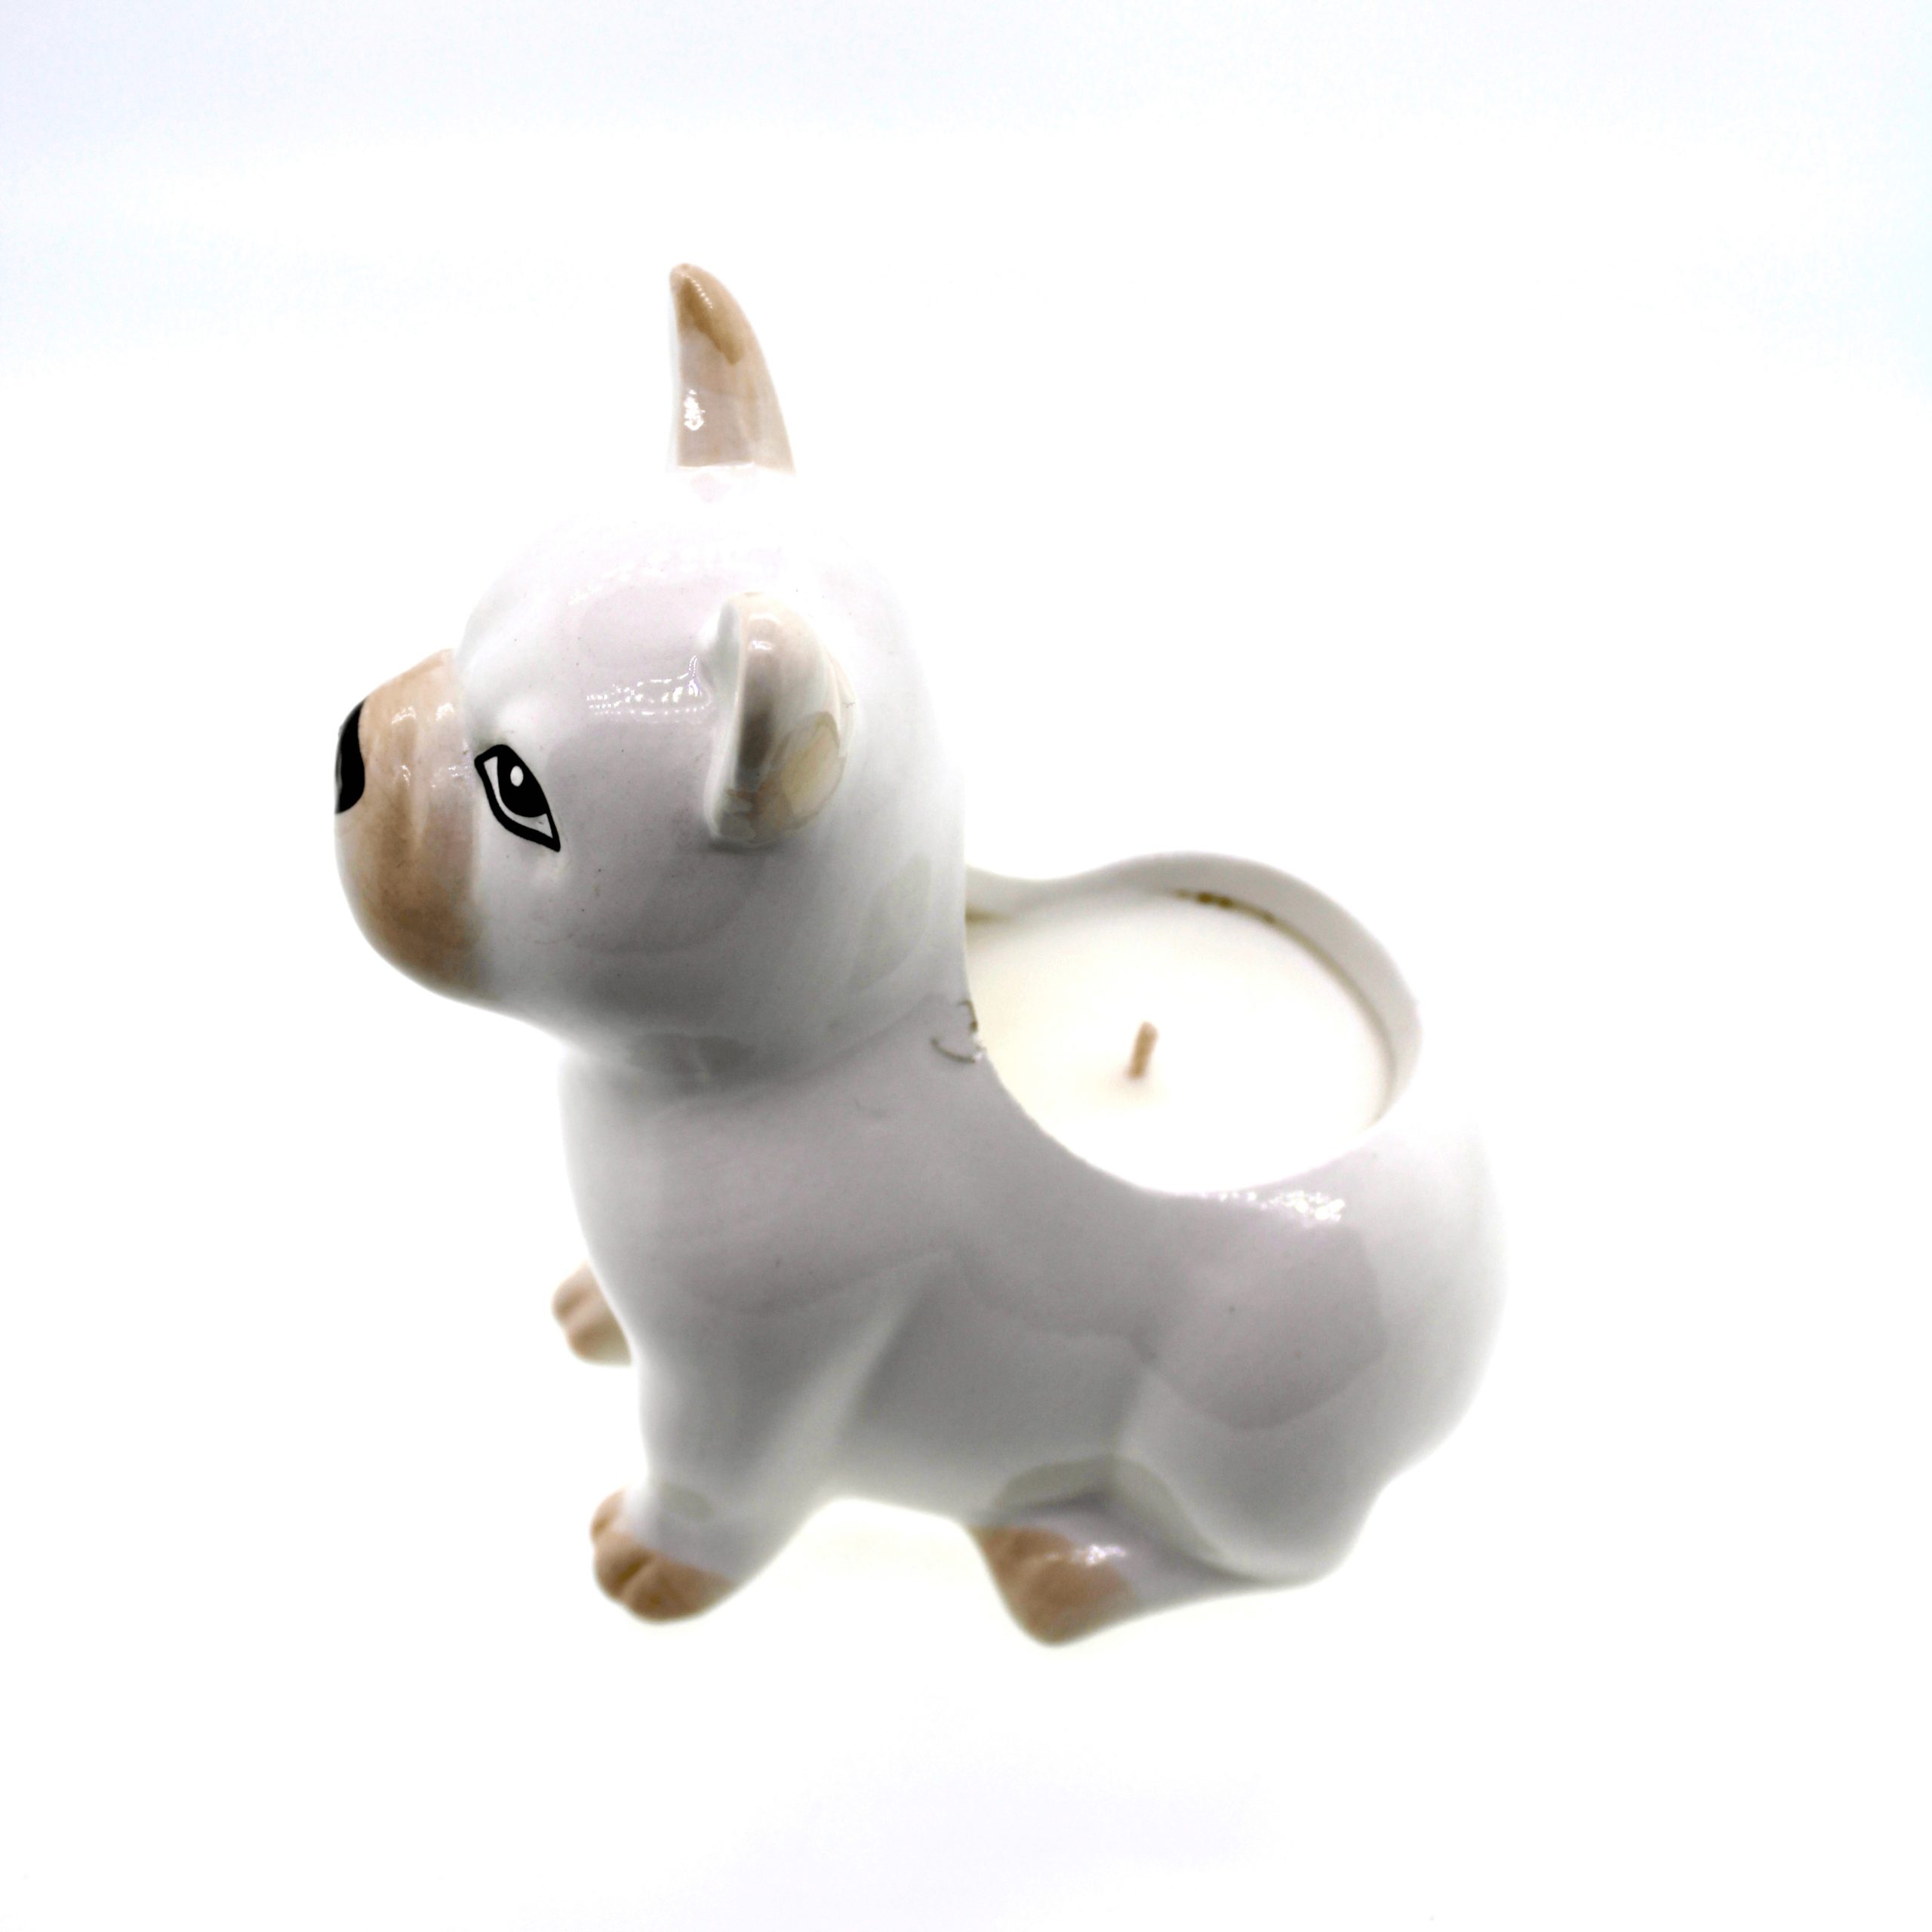 White Dog Candle holder.